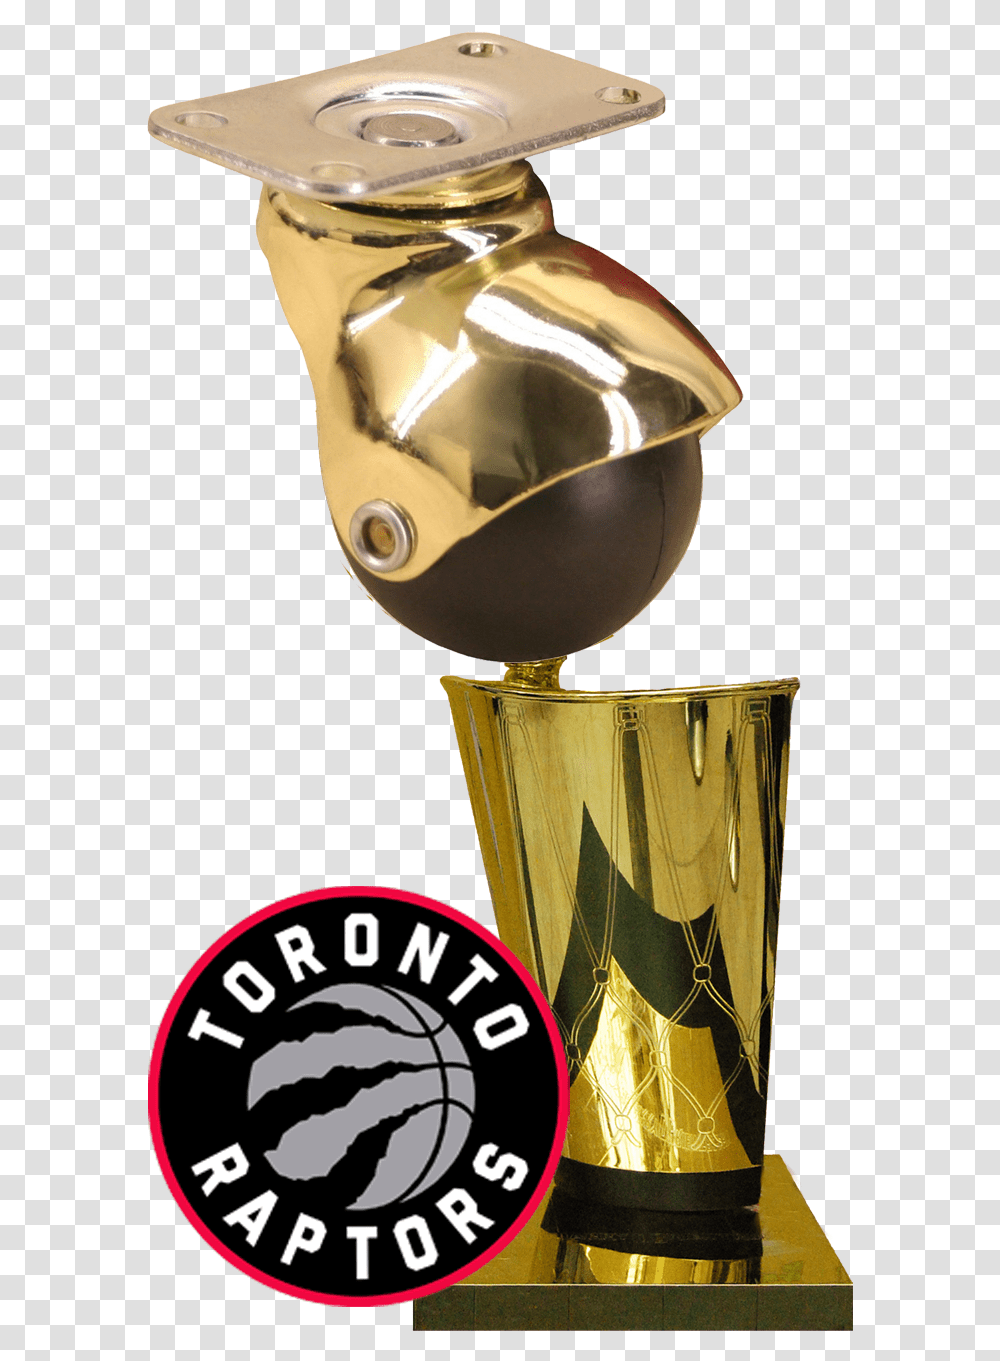 Raptors Lesson For The Caster Business Toronto Raptors Logo, Trophy Transparent Png